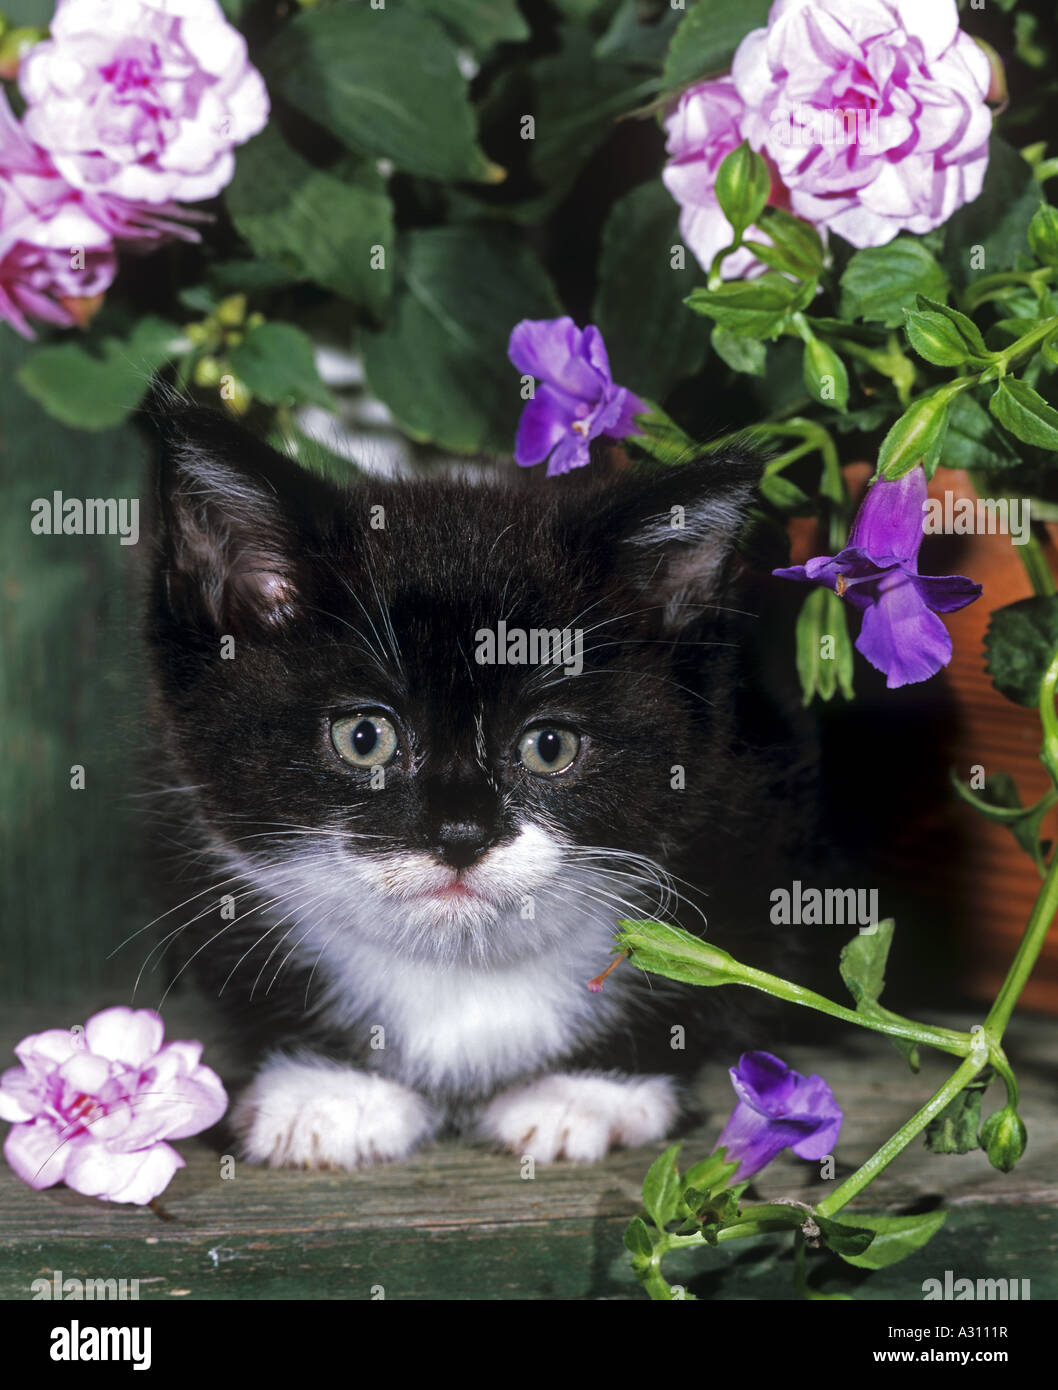 kitten between flowers Stock Photo